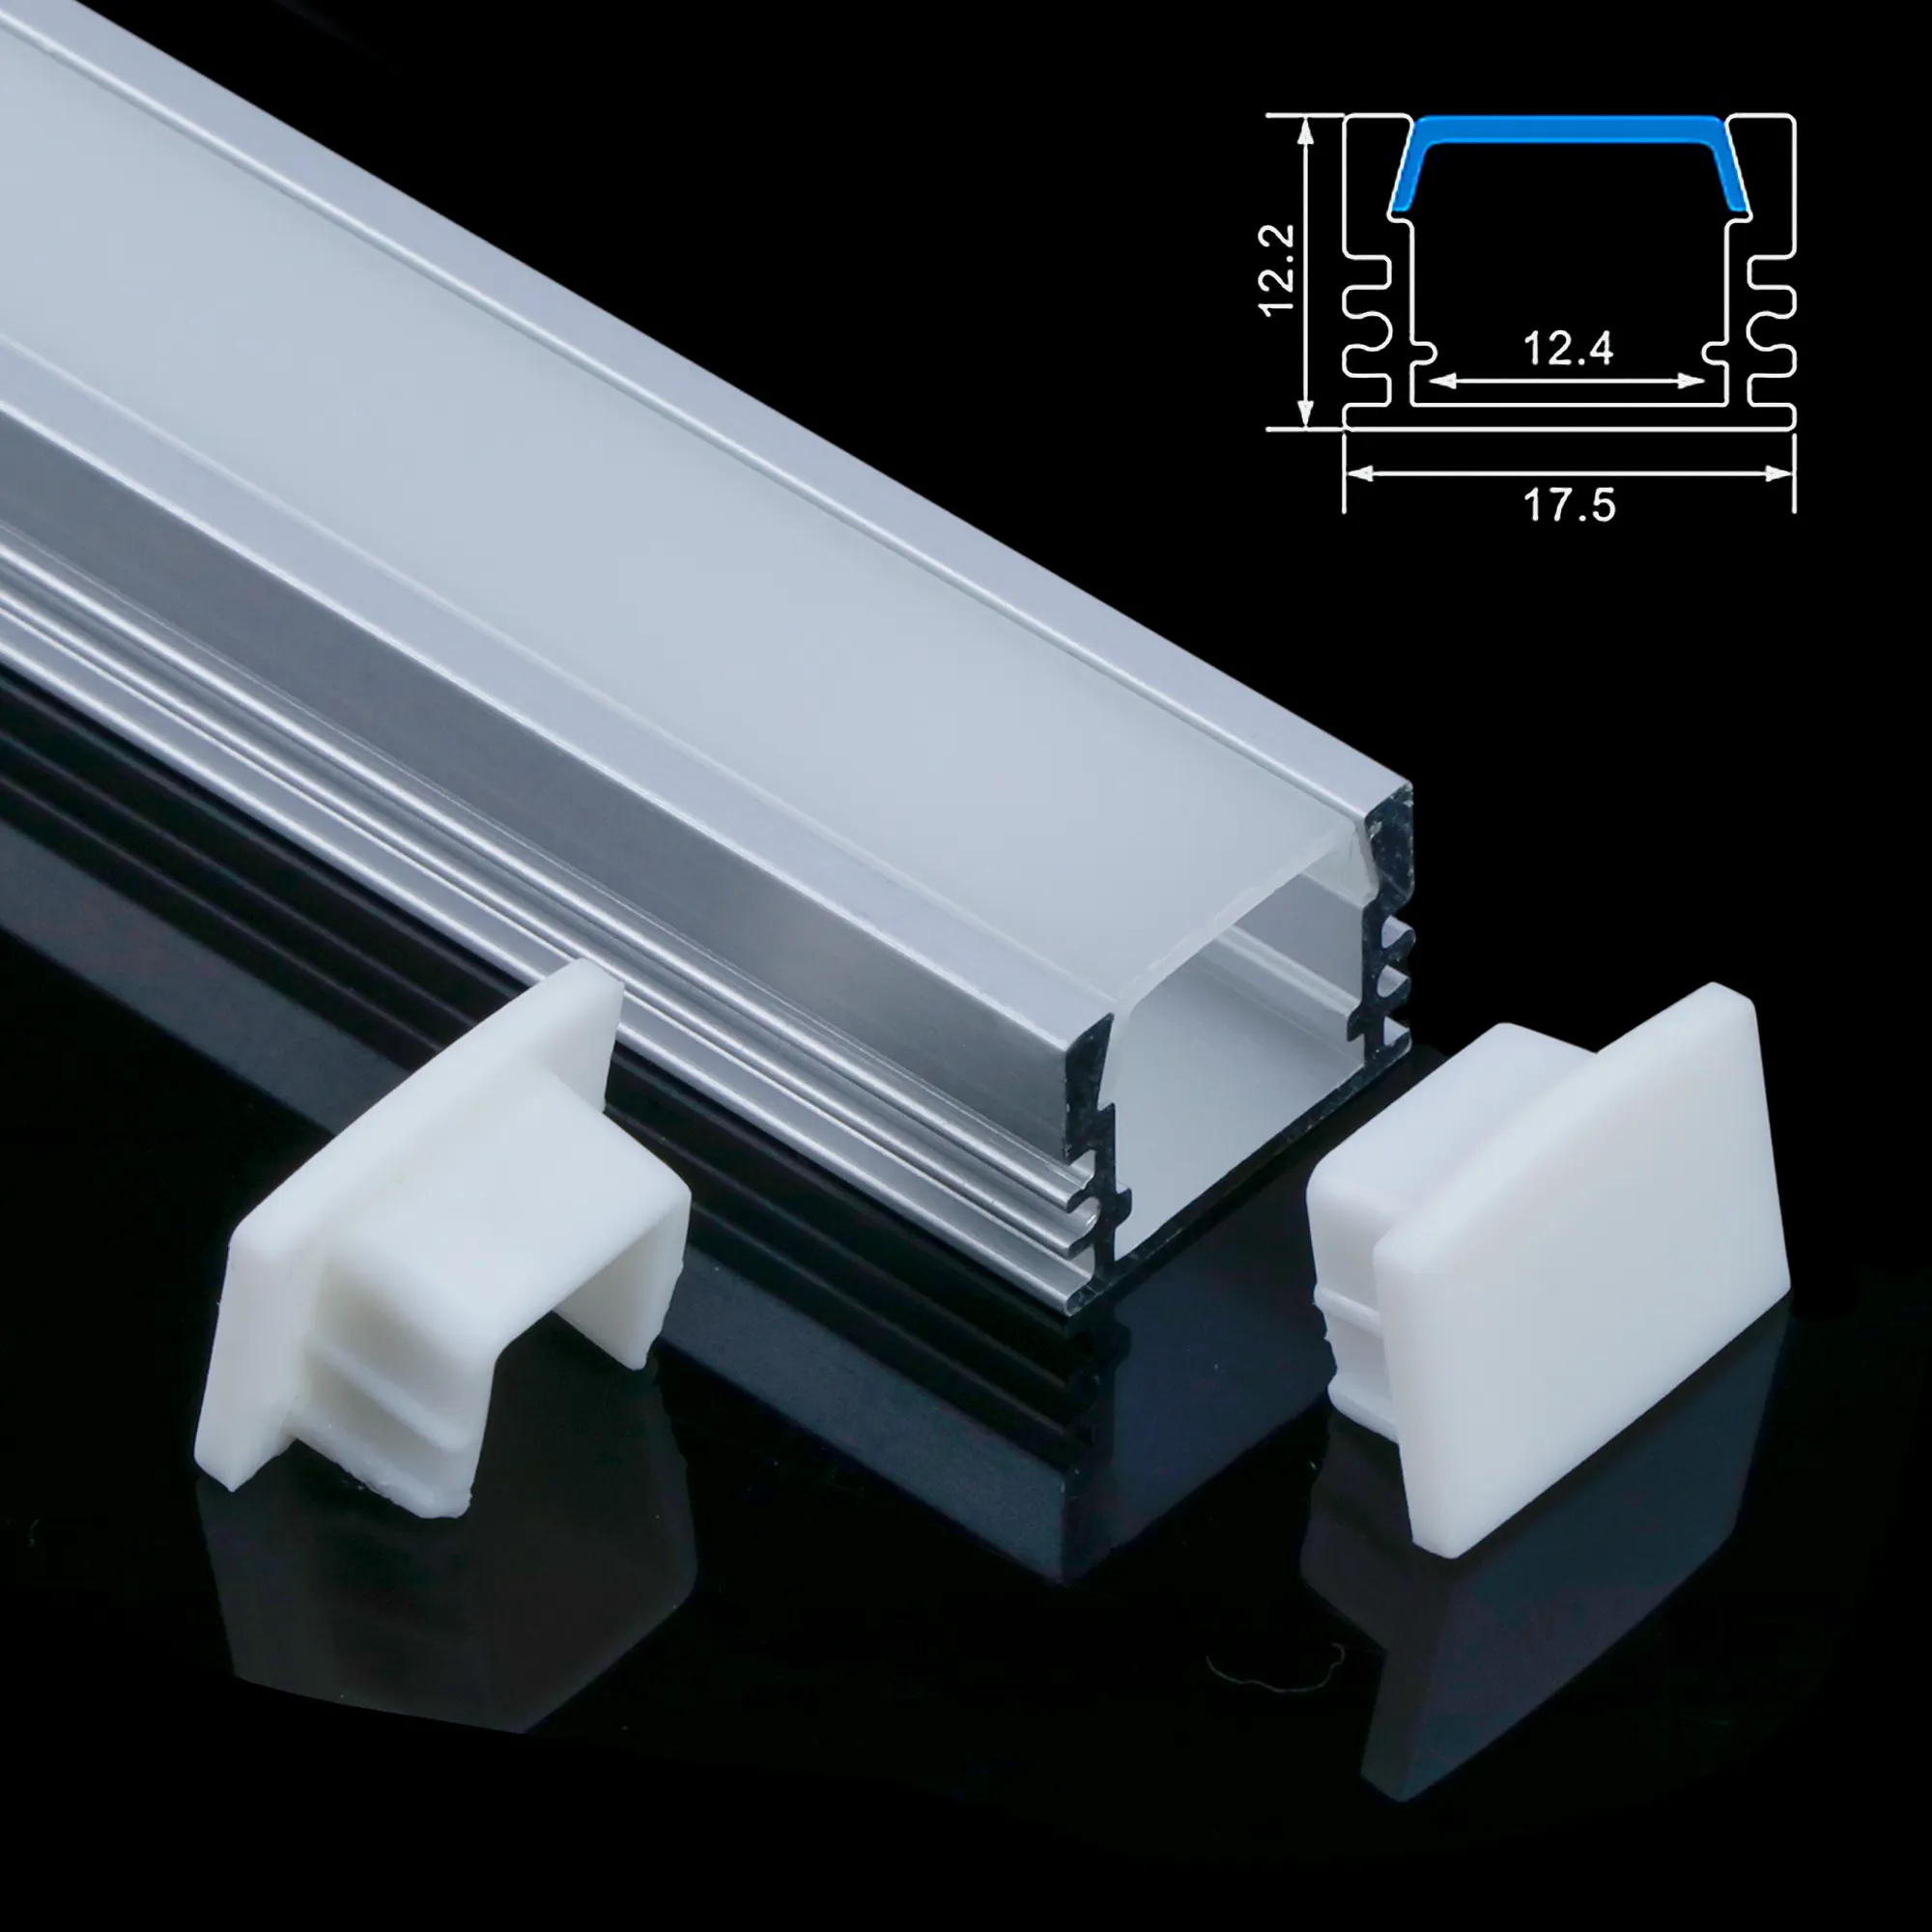 Yüksek kalite Led alüminyum profil kanal şerit ışık alçıpan için Led profil ışık alüminyum